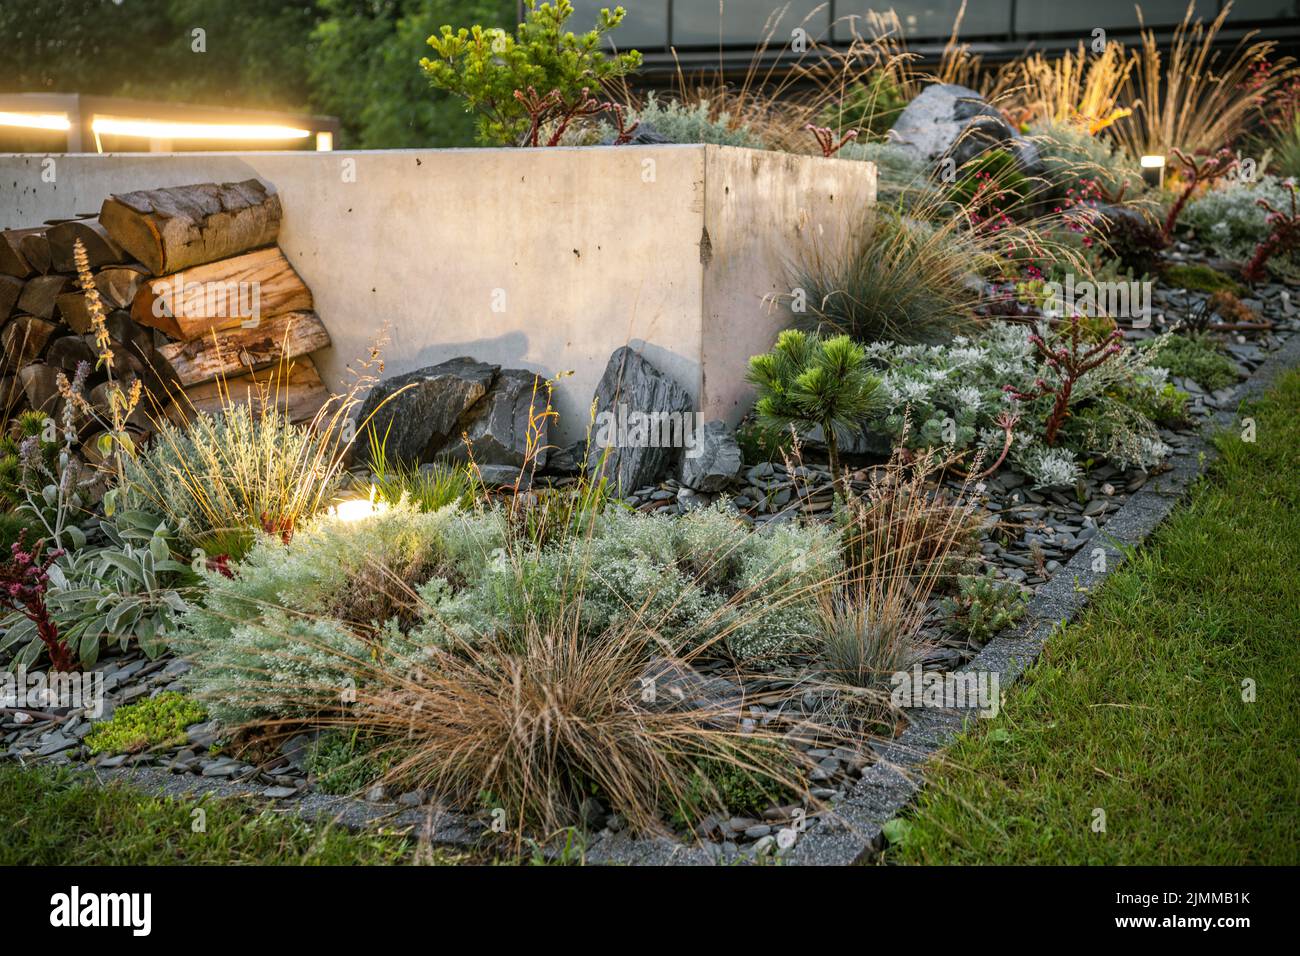 LED beleuchtete Wohnanlage Garten Garten in Nahaufnahme. Thema Gartenbau und Landschaftsbau. Stockfoto